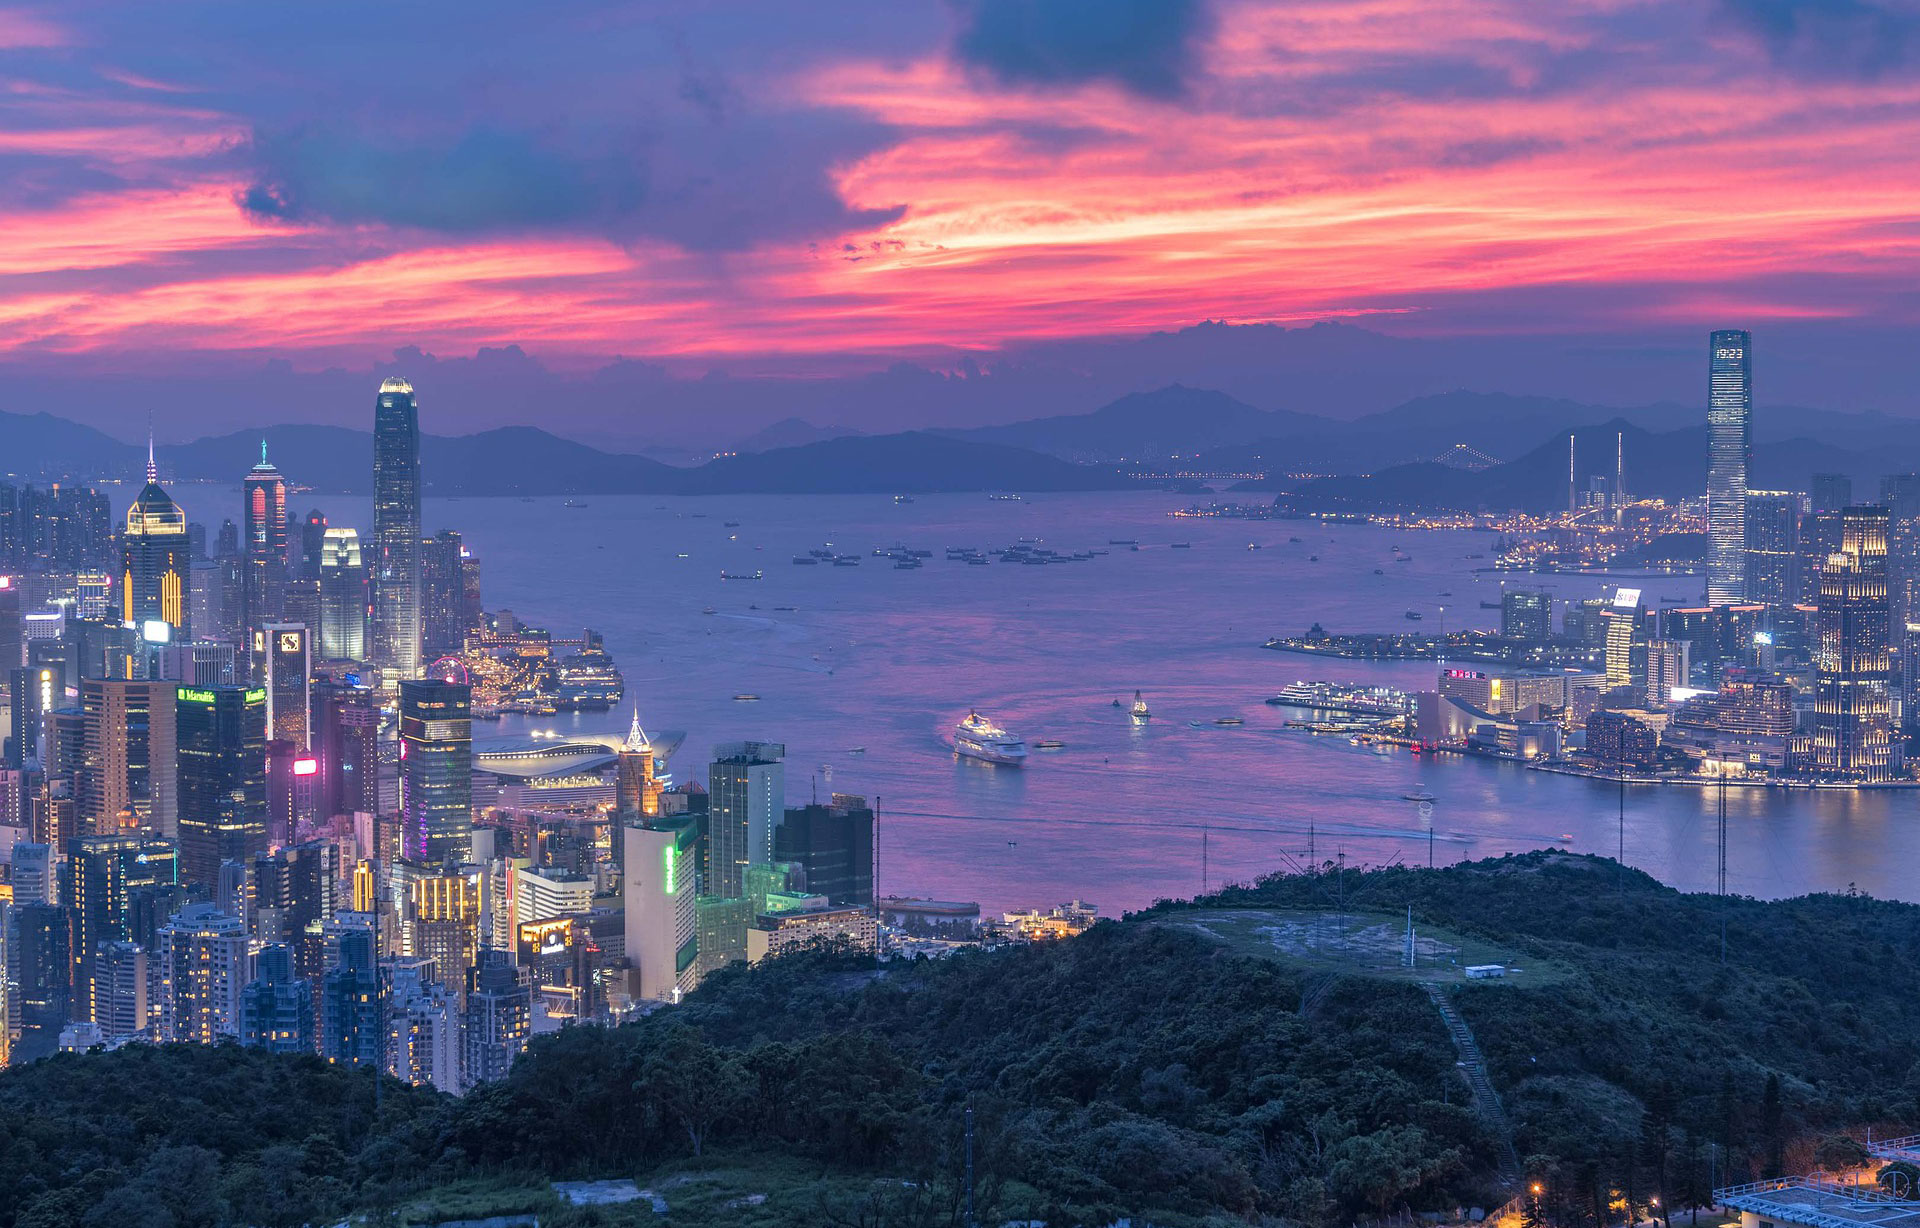 Χονγκ Κονγκ, Hong Kong, pixabay